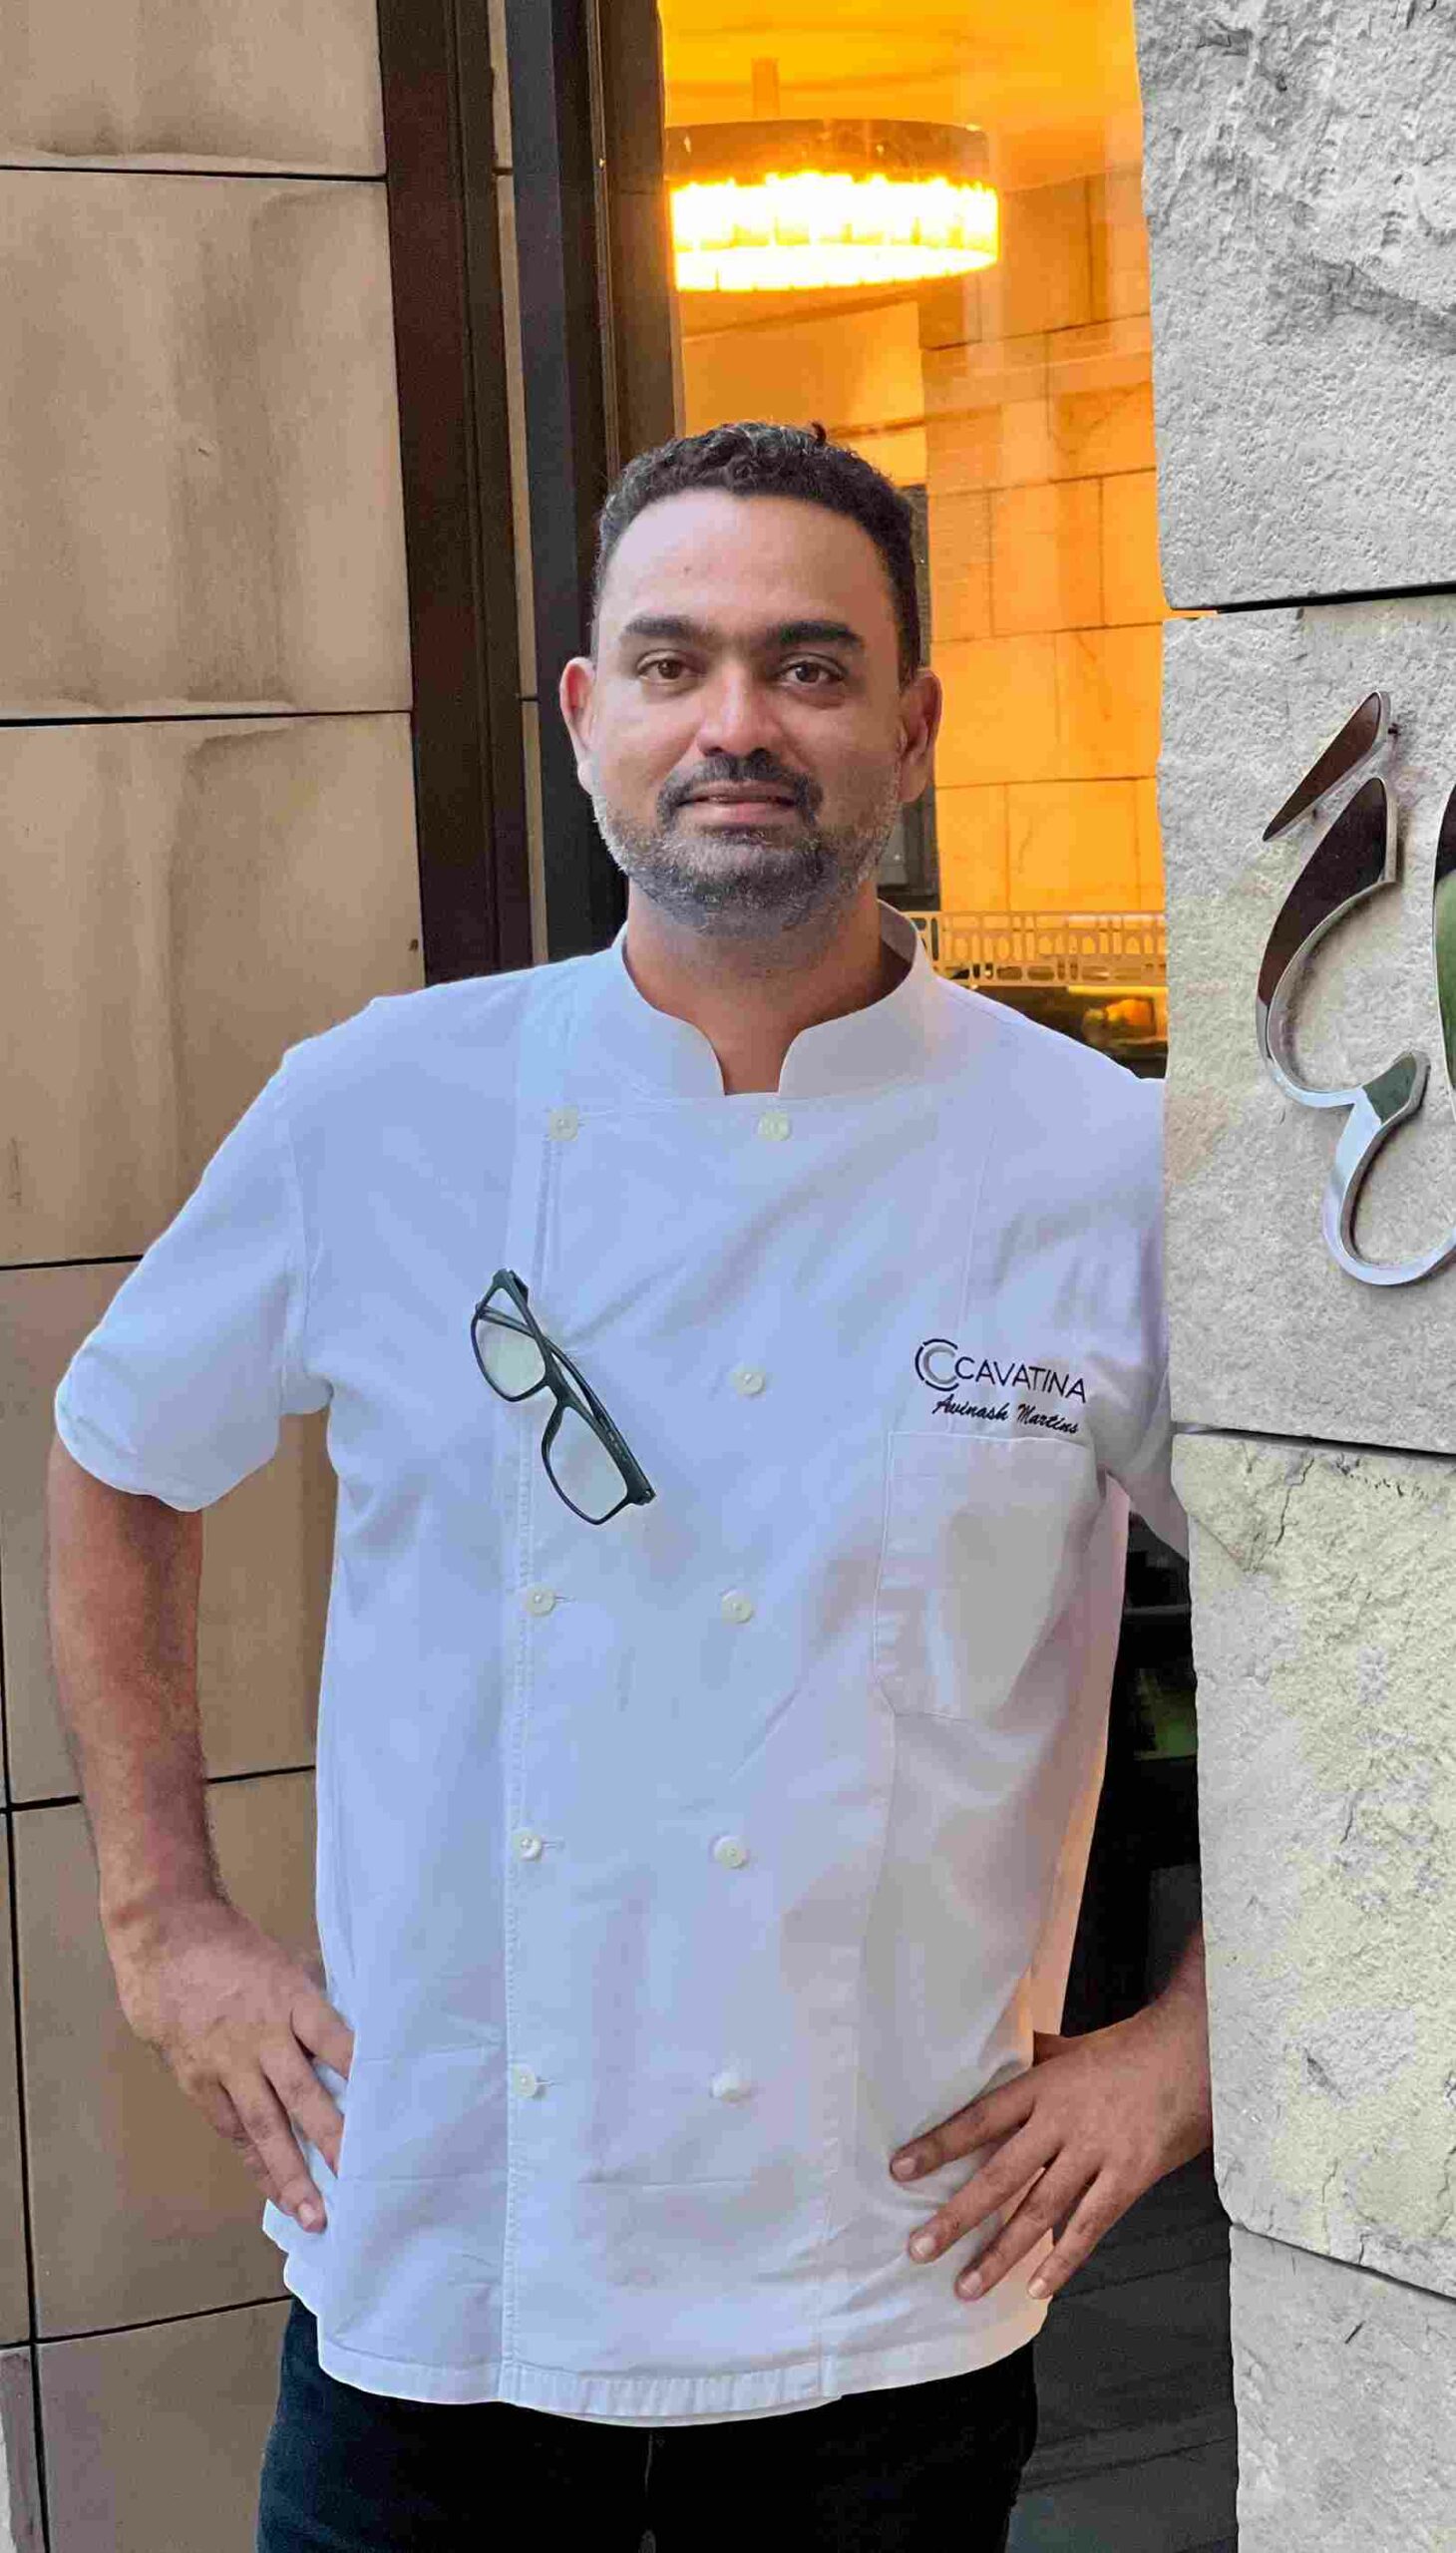 Chef Avinash Martins behind the venture C'est L'avi